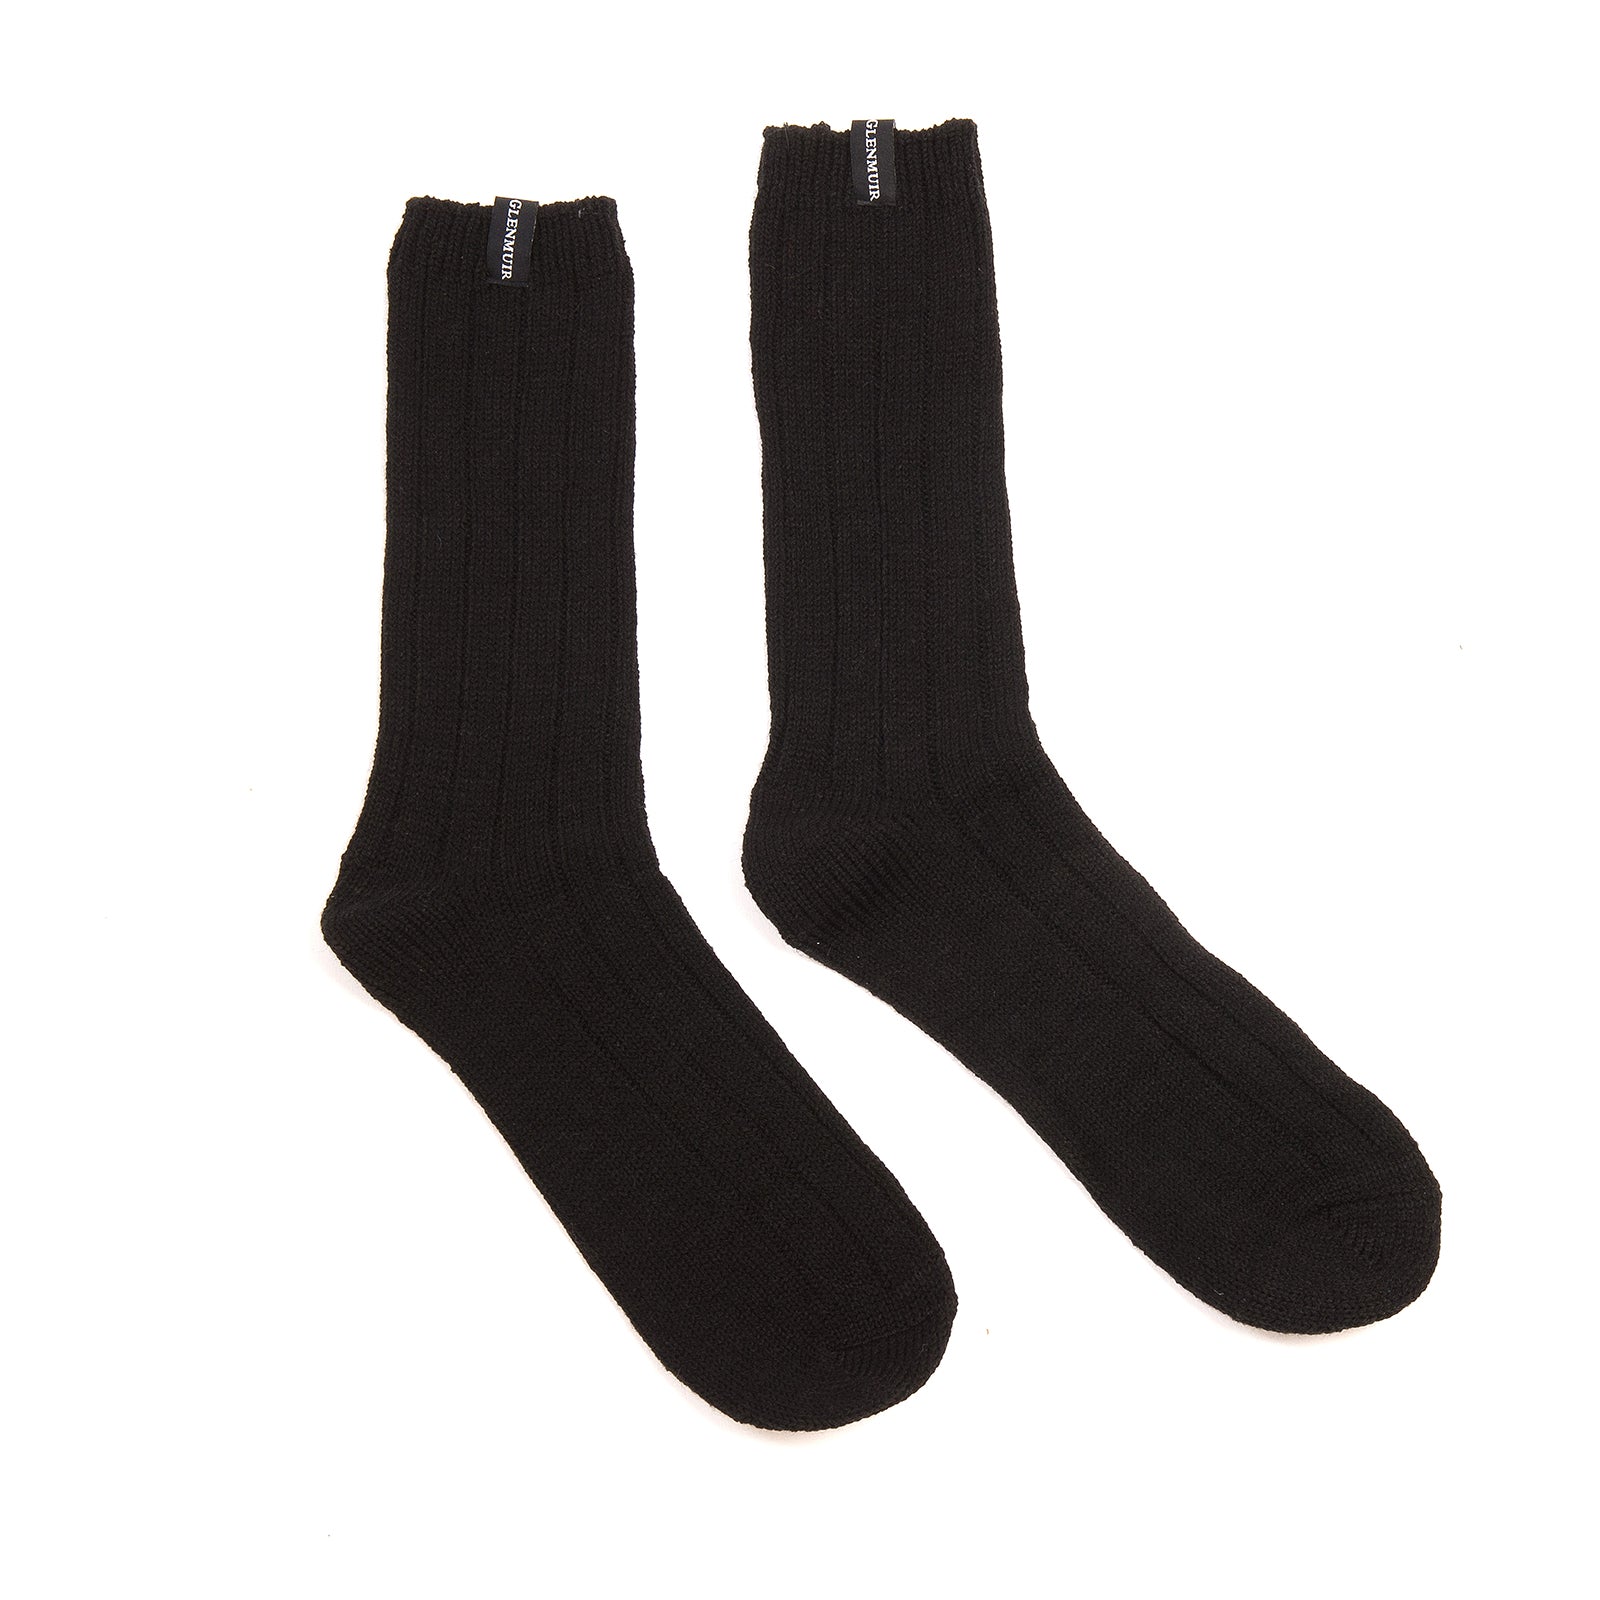 GLENMUIR 2PK Merino Wool Blend Boot Socks- Mens 7-11